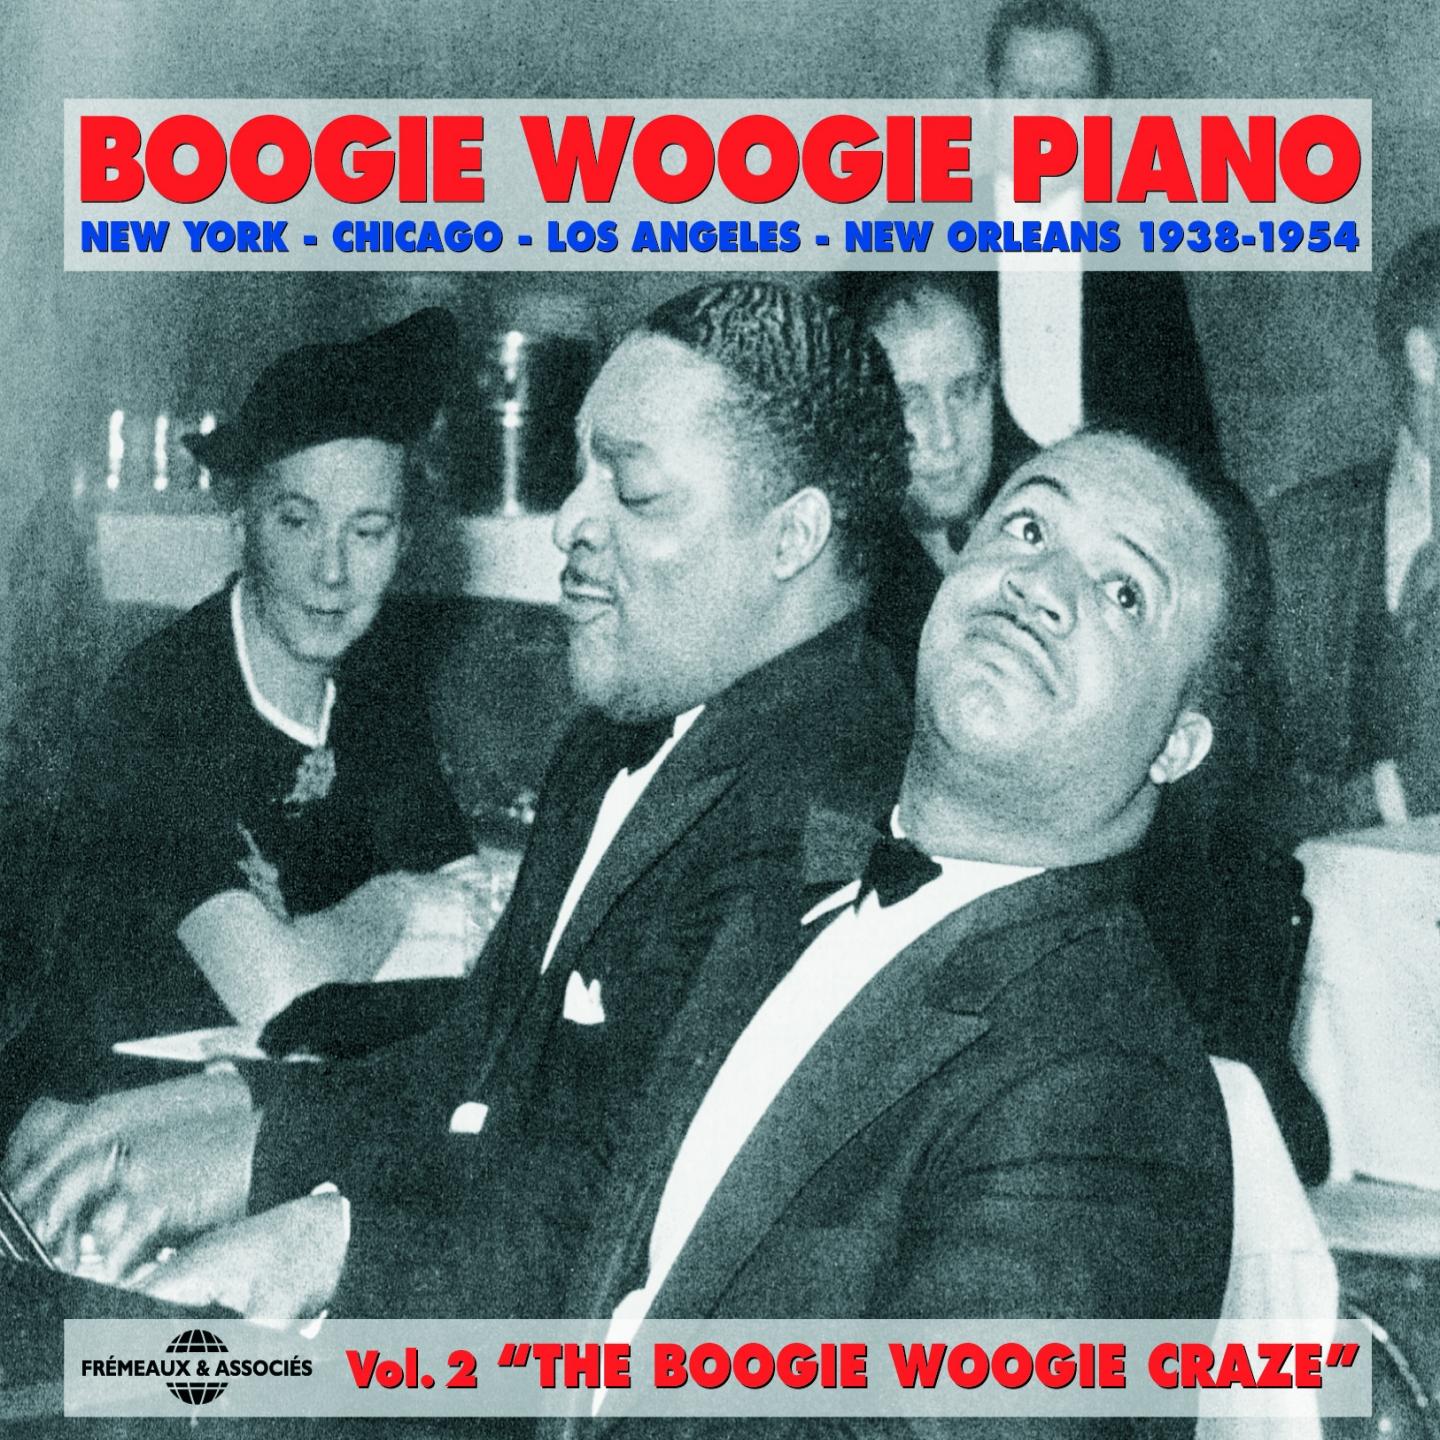 The Boogie Woogie Craze 1938-1954 (Boogie Woogie piano)